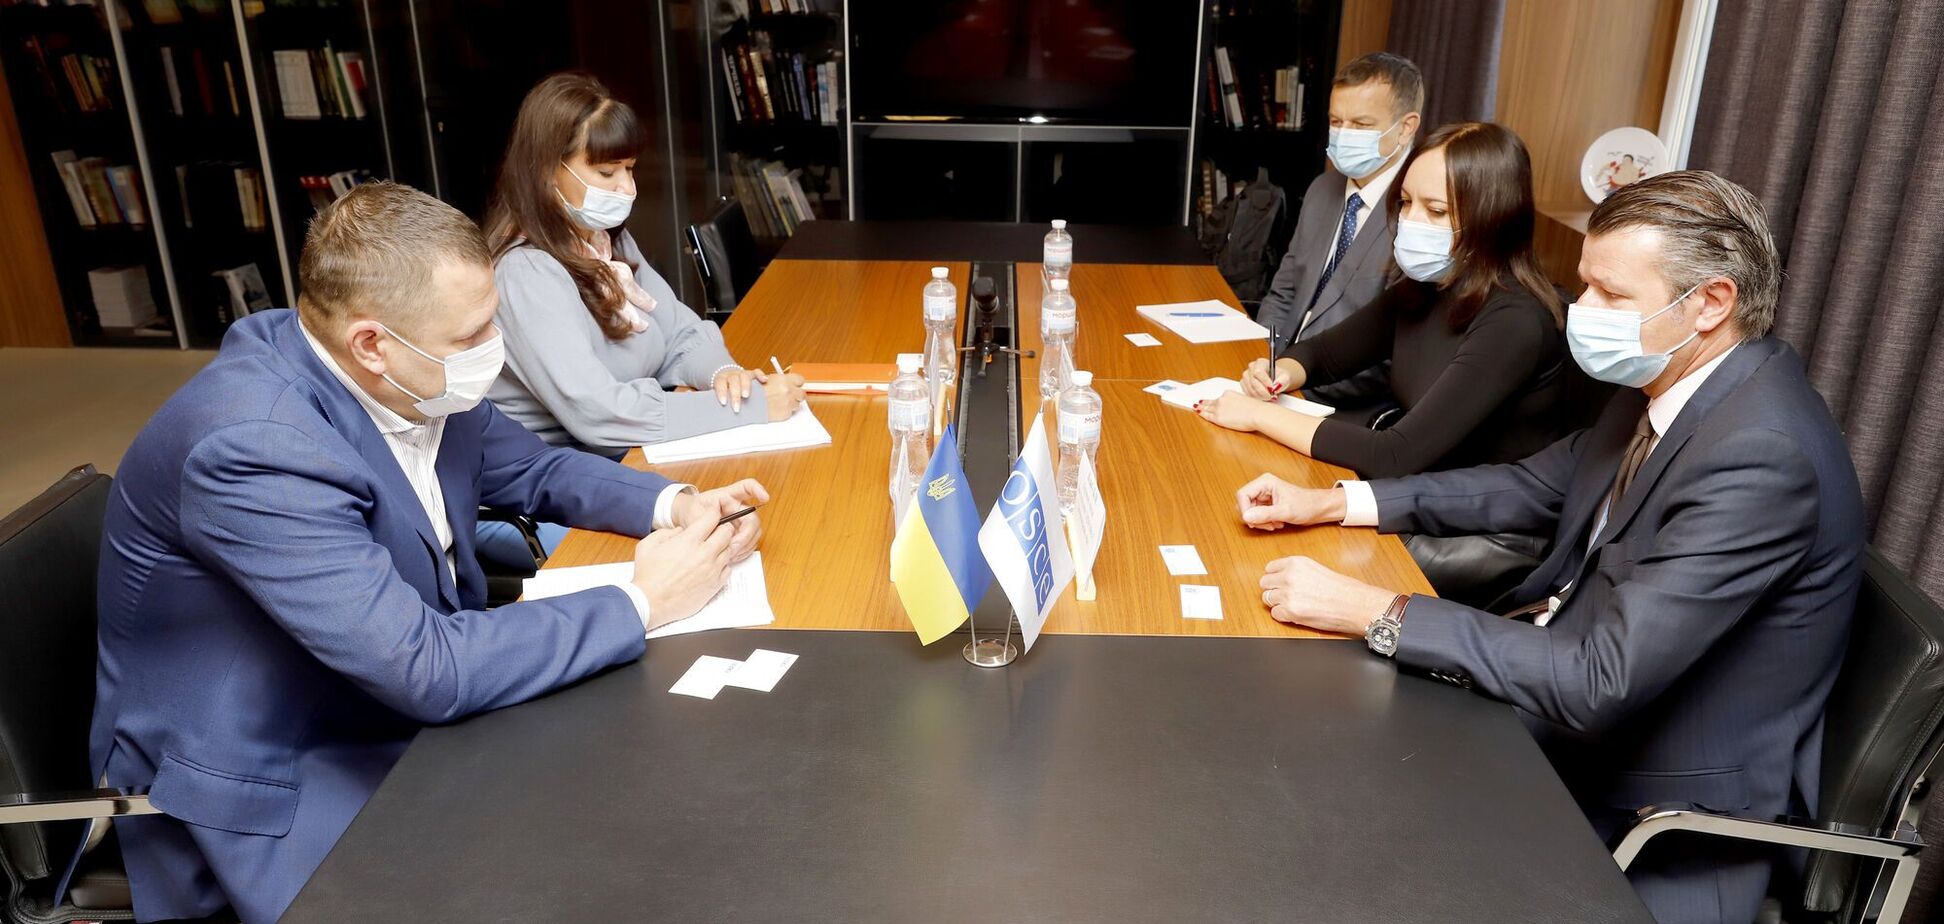 Филатов встретился с руководителем группы наблюдателей Днепровского офиса ОБСЕ в Украине Ксавье Бле